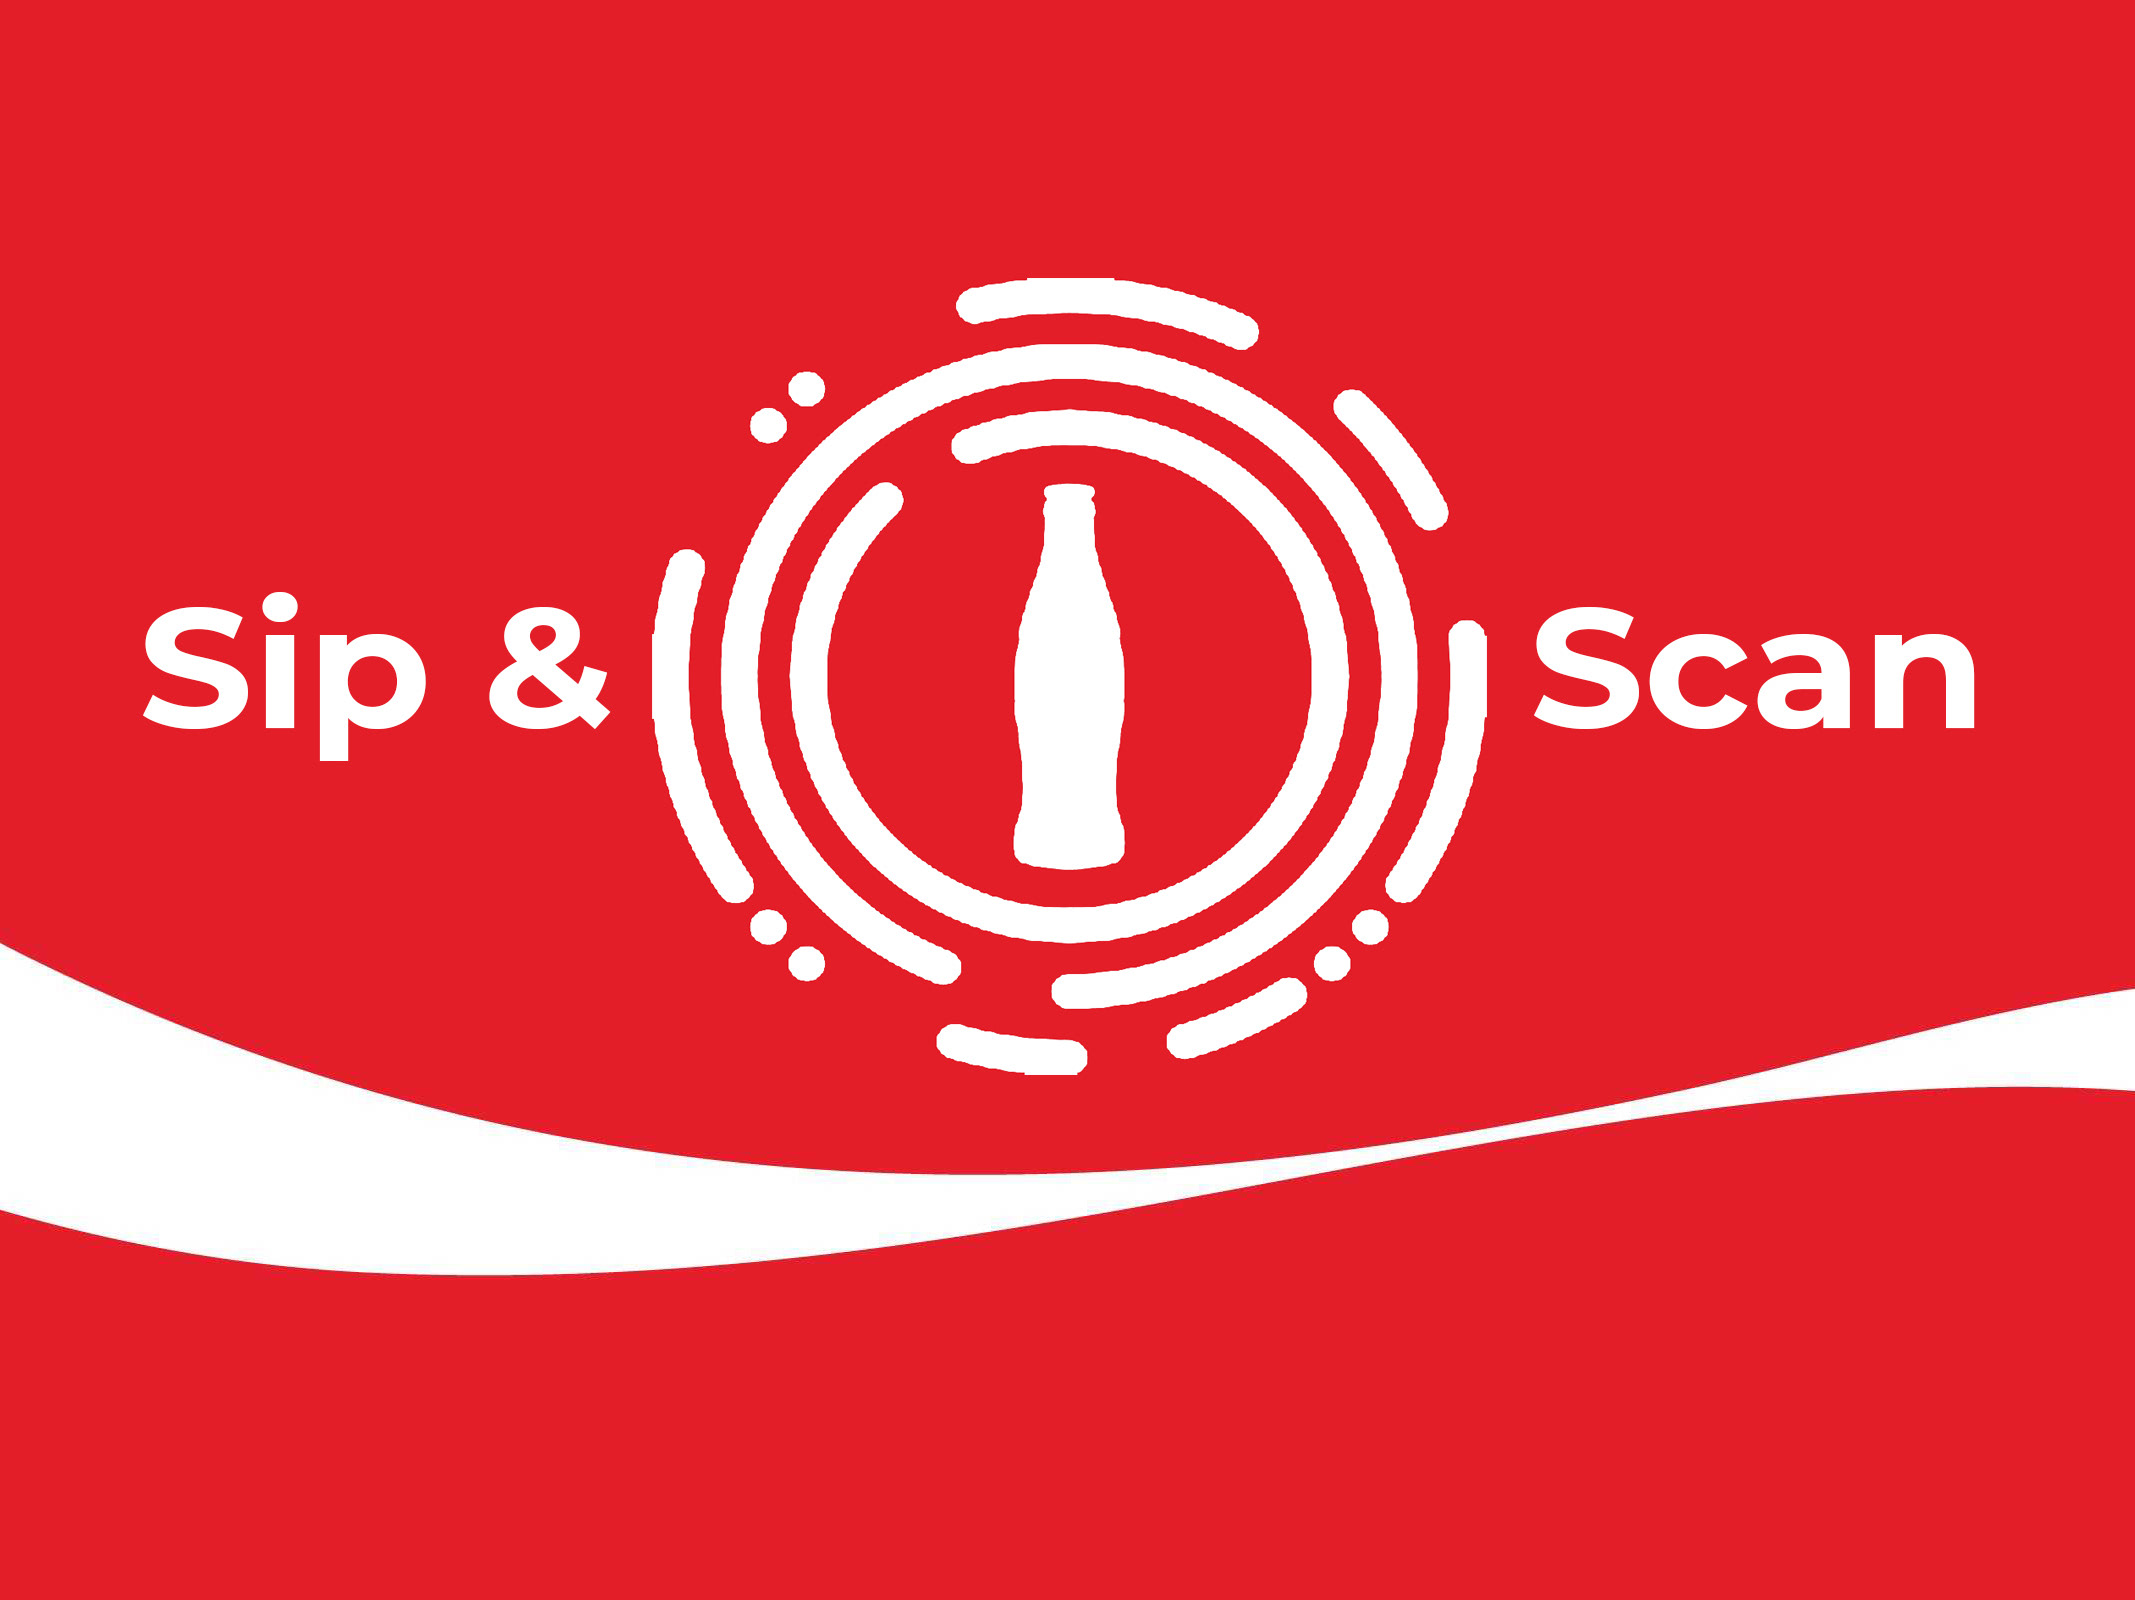 Patrick Bryan Coca Cola Sip Scan